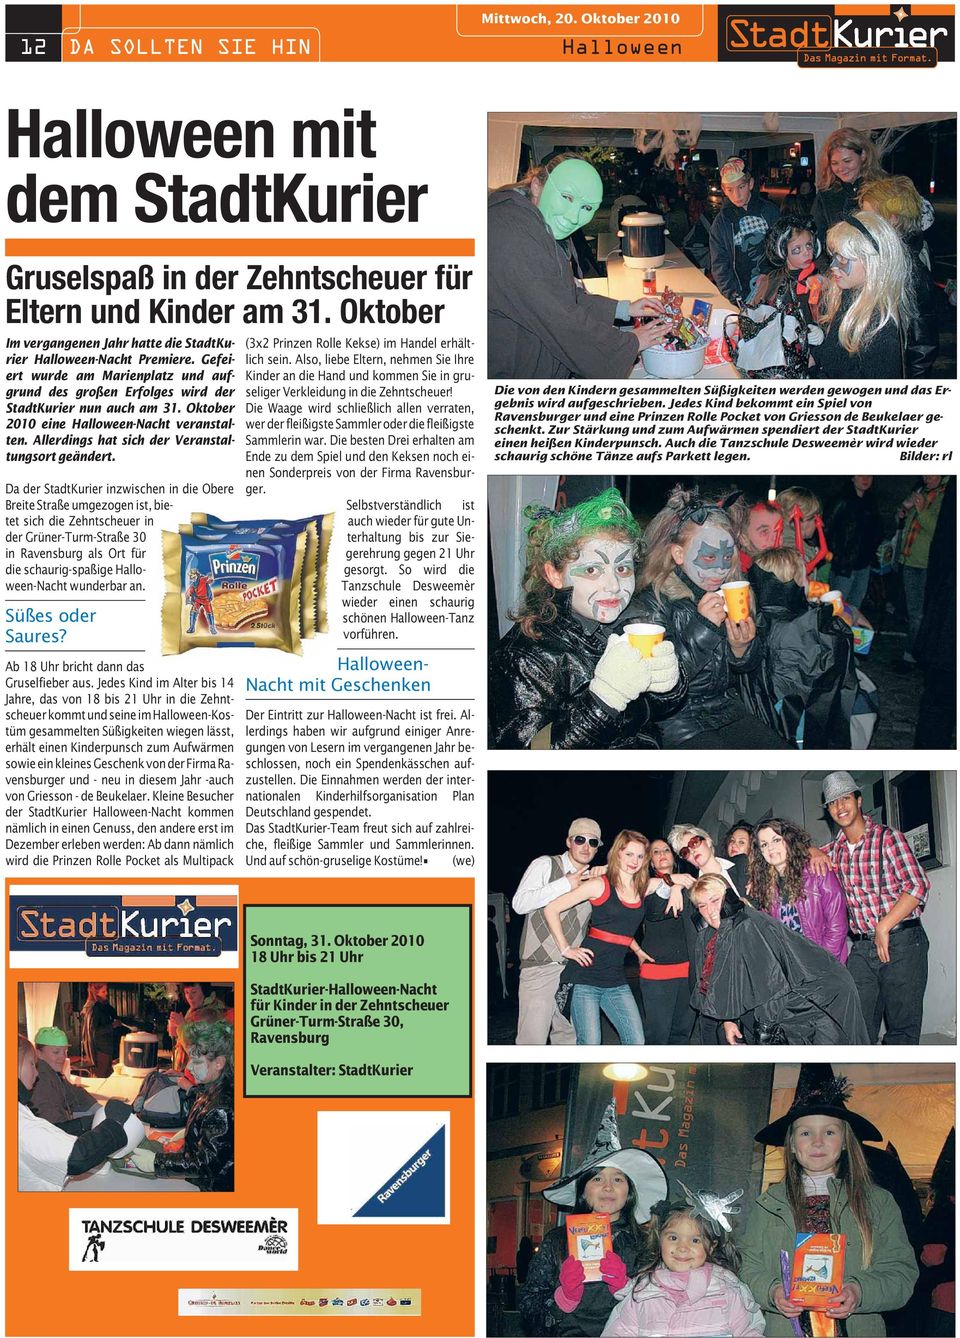 Da der StadtKurier inzwischen in die Obere Breite Straße umgezogen ist, bietet sich die Zehntscheuer in der Grüner-Turm-Straße 30 in Ravensburg als Ort für die schaurig-spaßige Halloween-Nacht